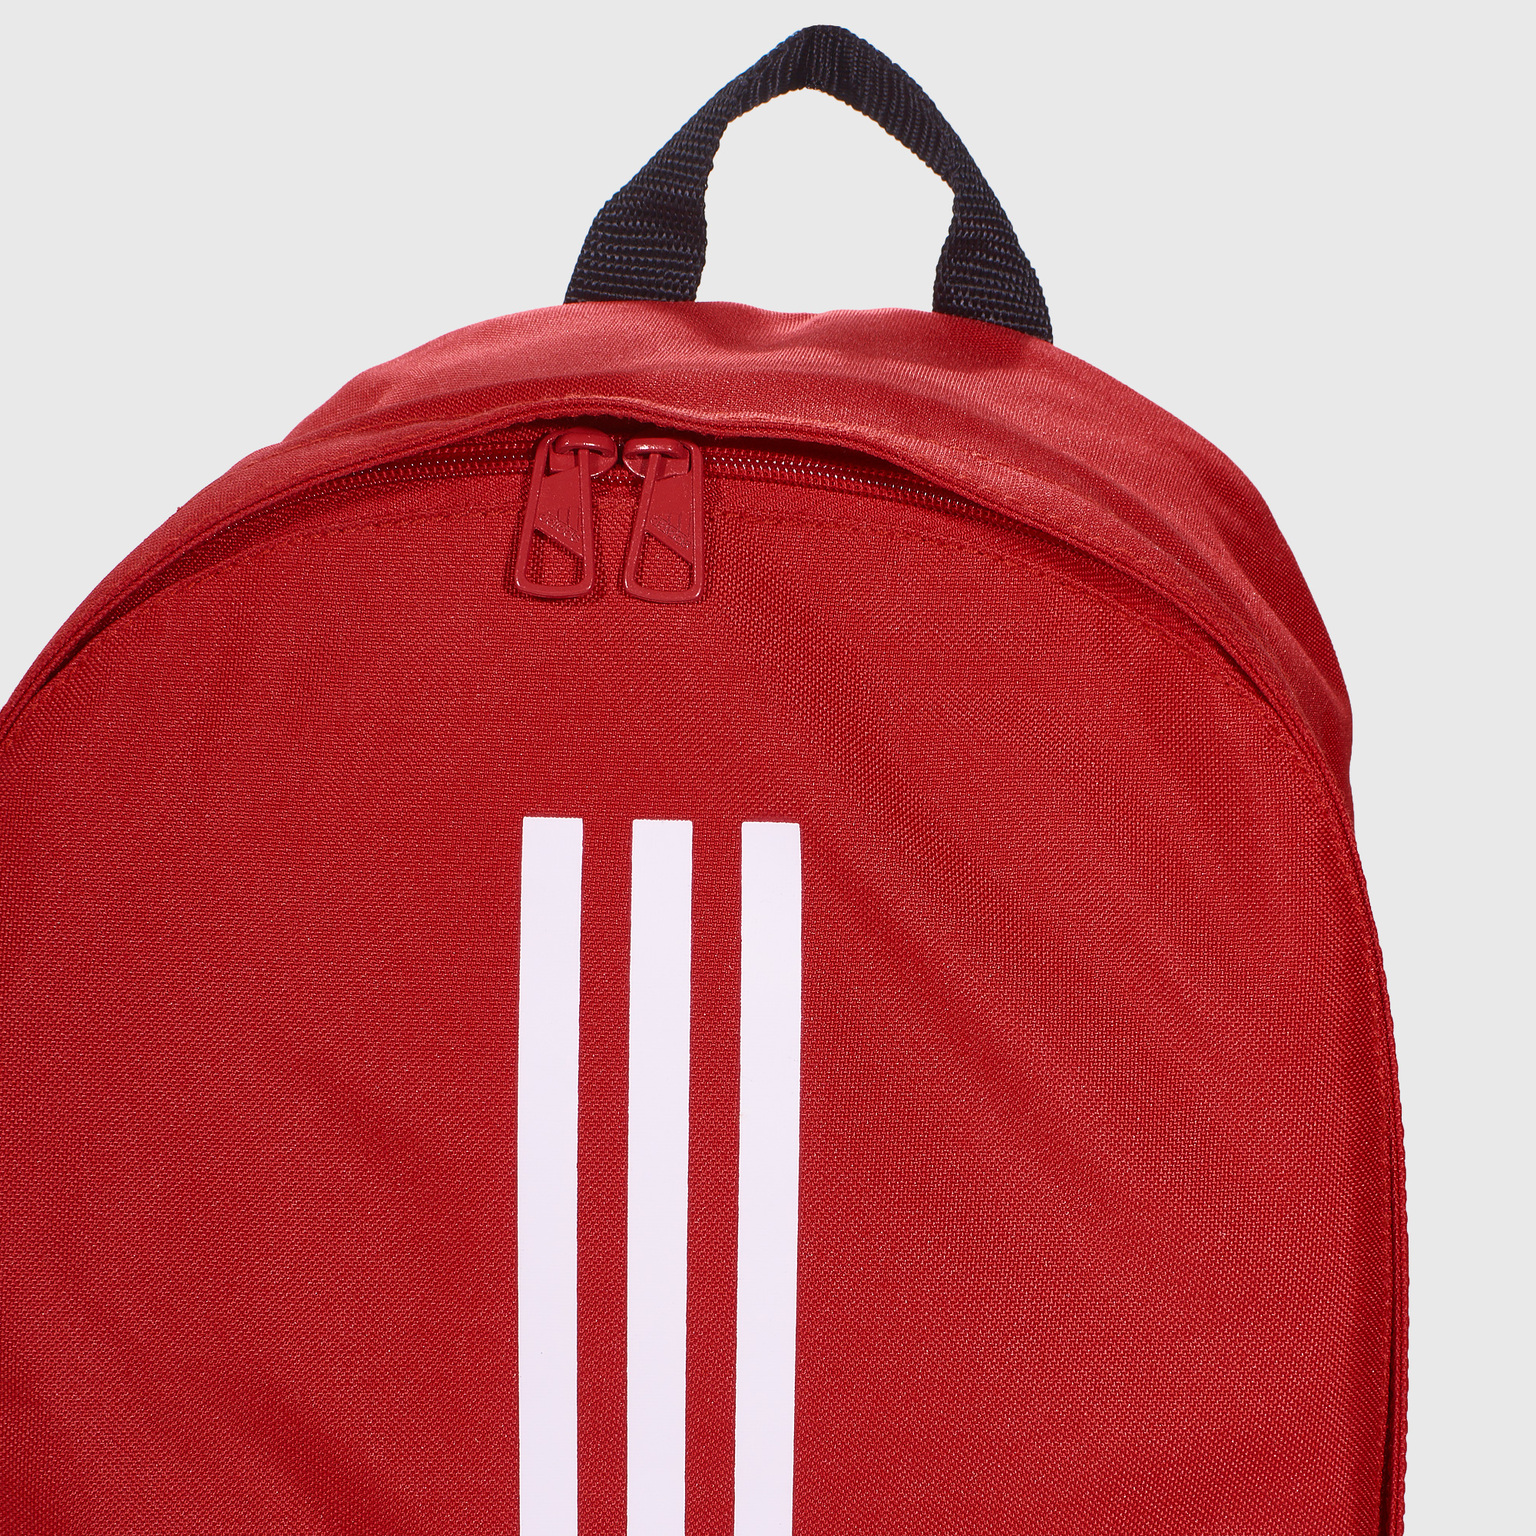 Рюкзак Adidas Tiro Backpack DU1993